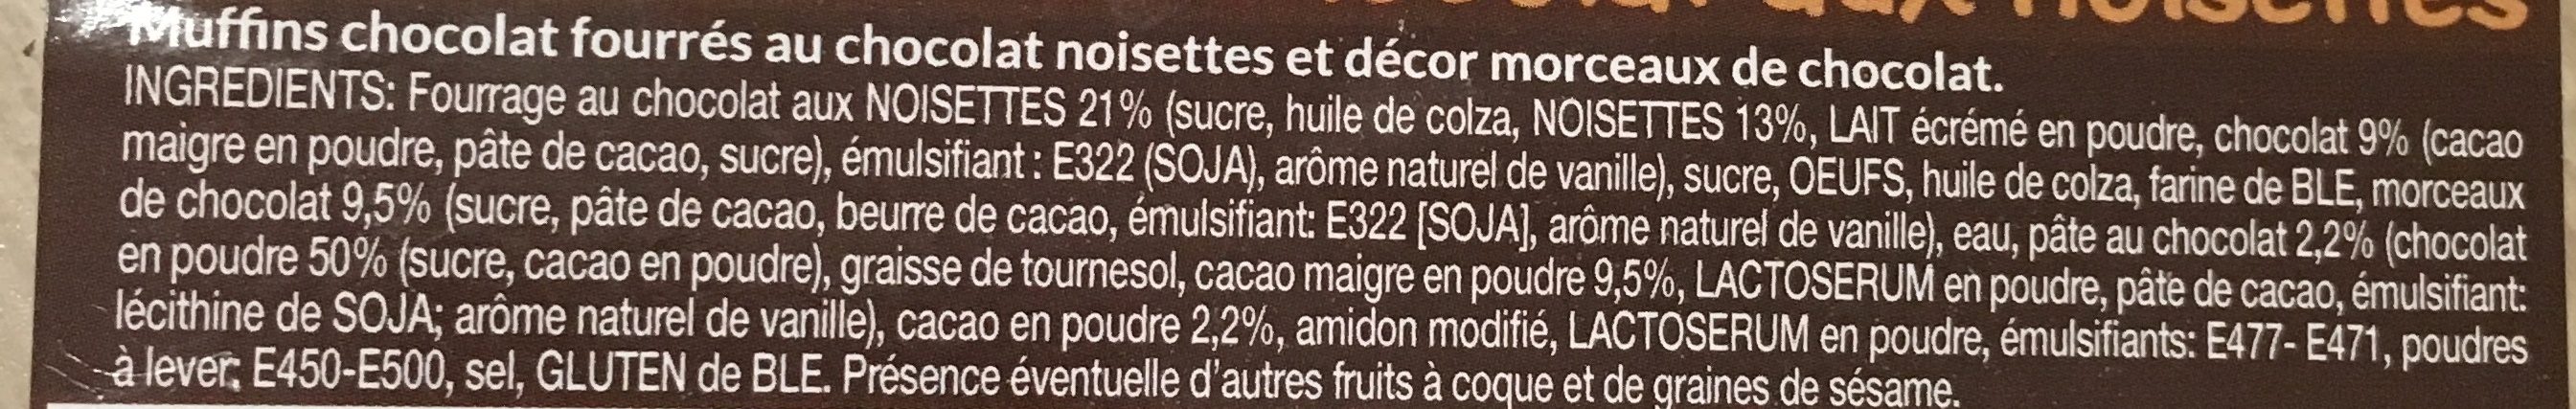 2 muffins Cœur Fondant au Chocolat aux Noisettes - Ingredients - fr